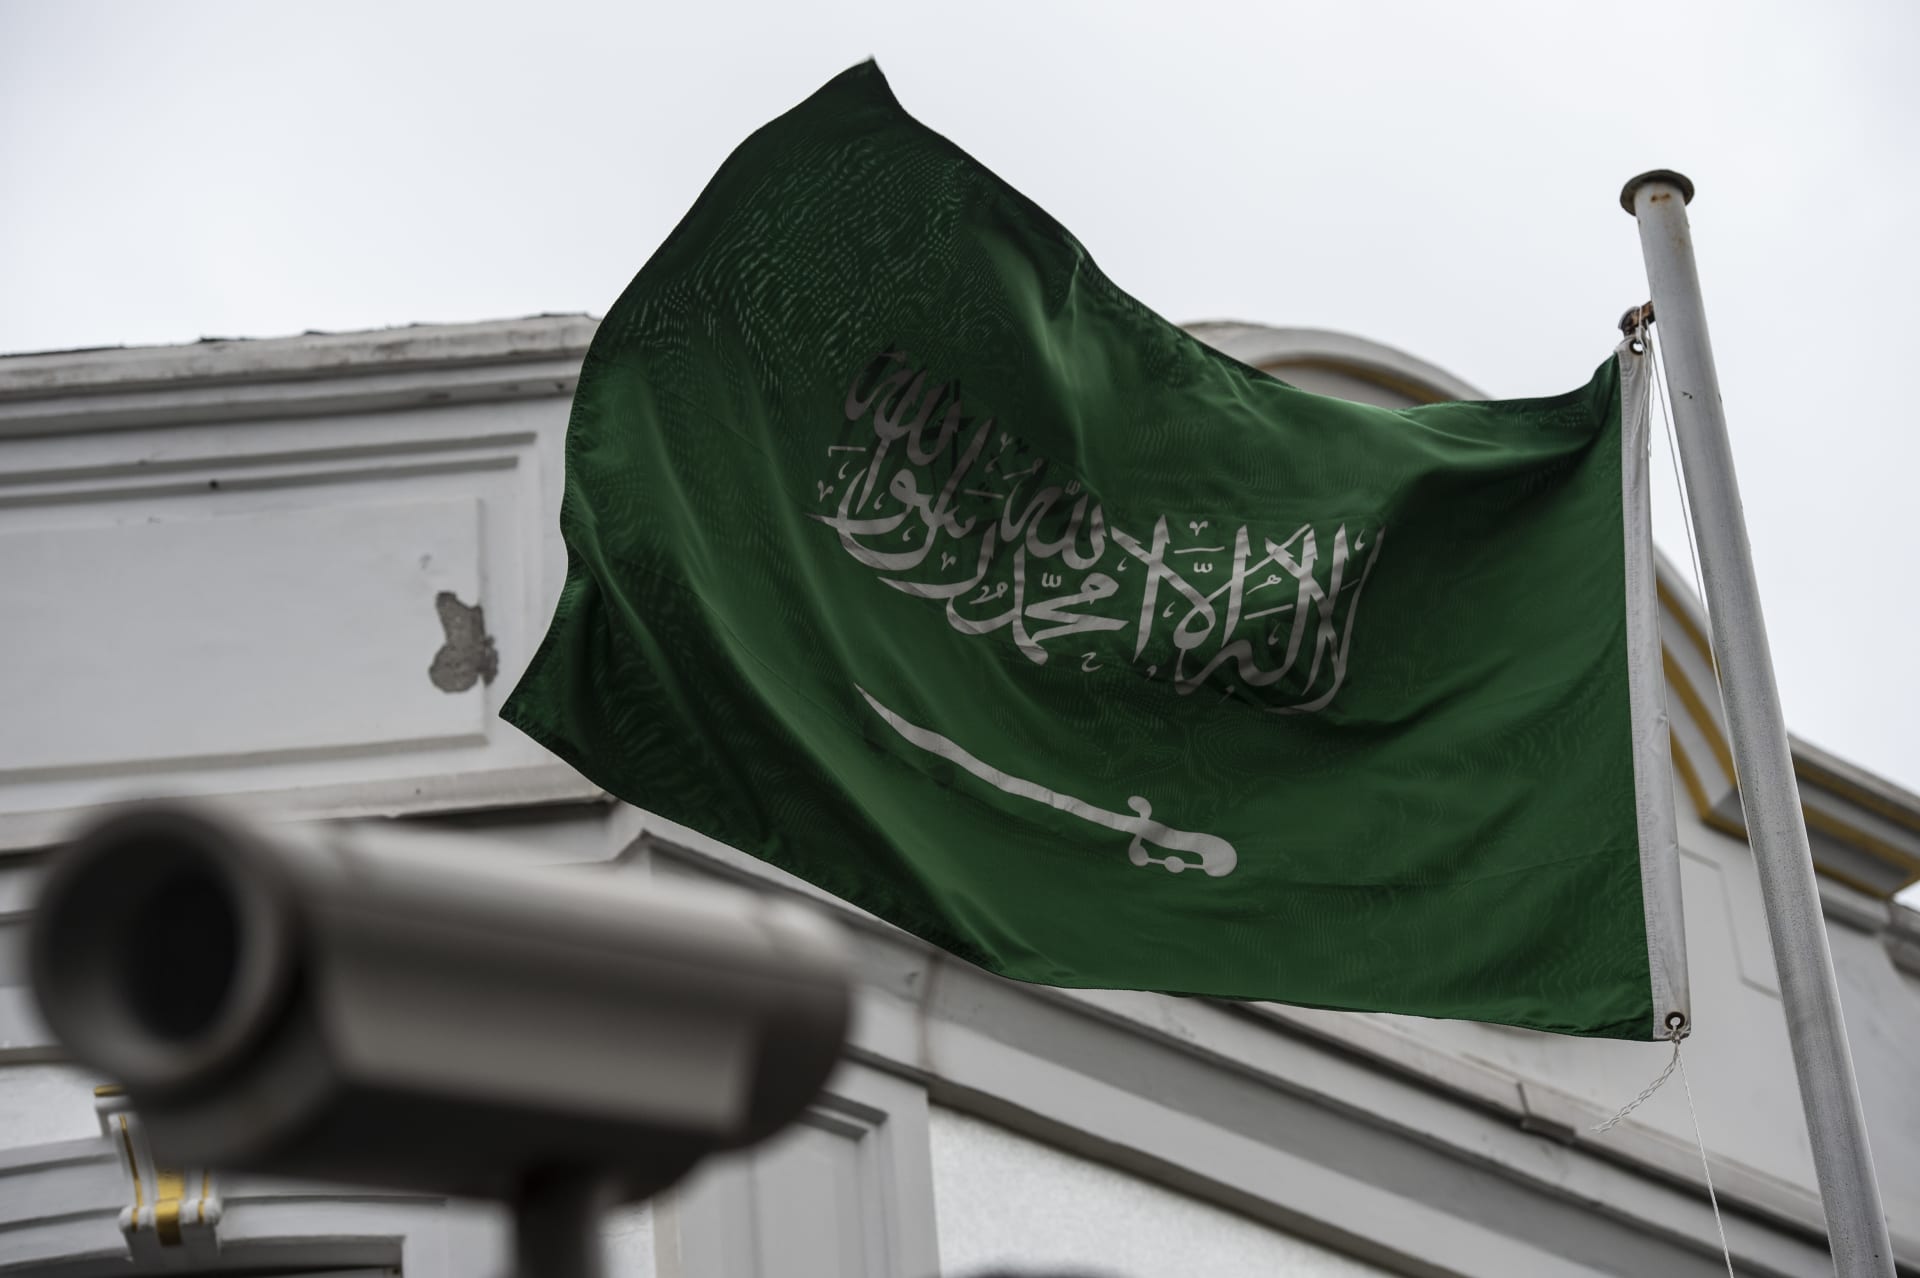 أكاديمي سعودي ينتقد تقسيم تاريخ بلاده إلى 3 مراحل: دولة واحدة تغير حكامها